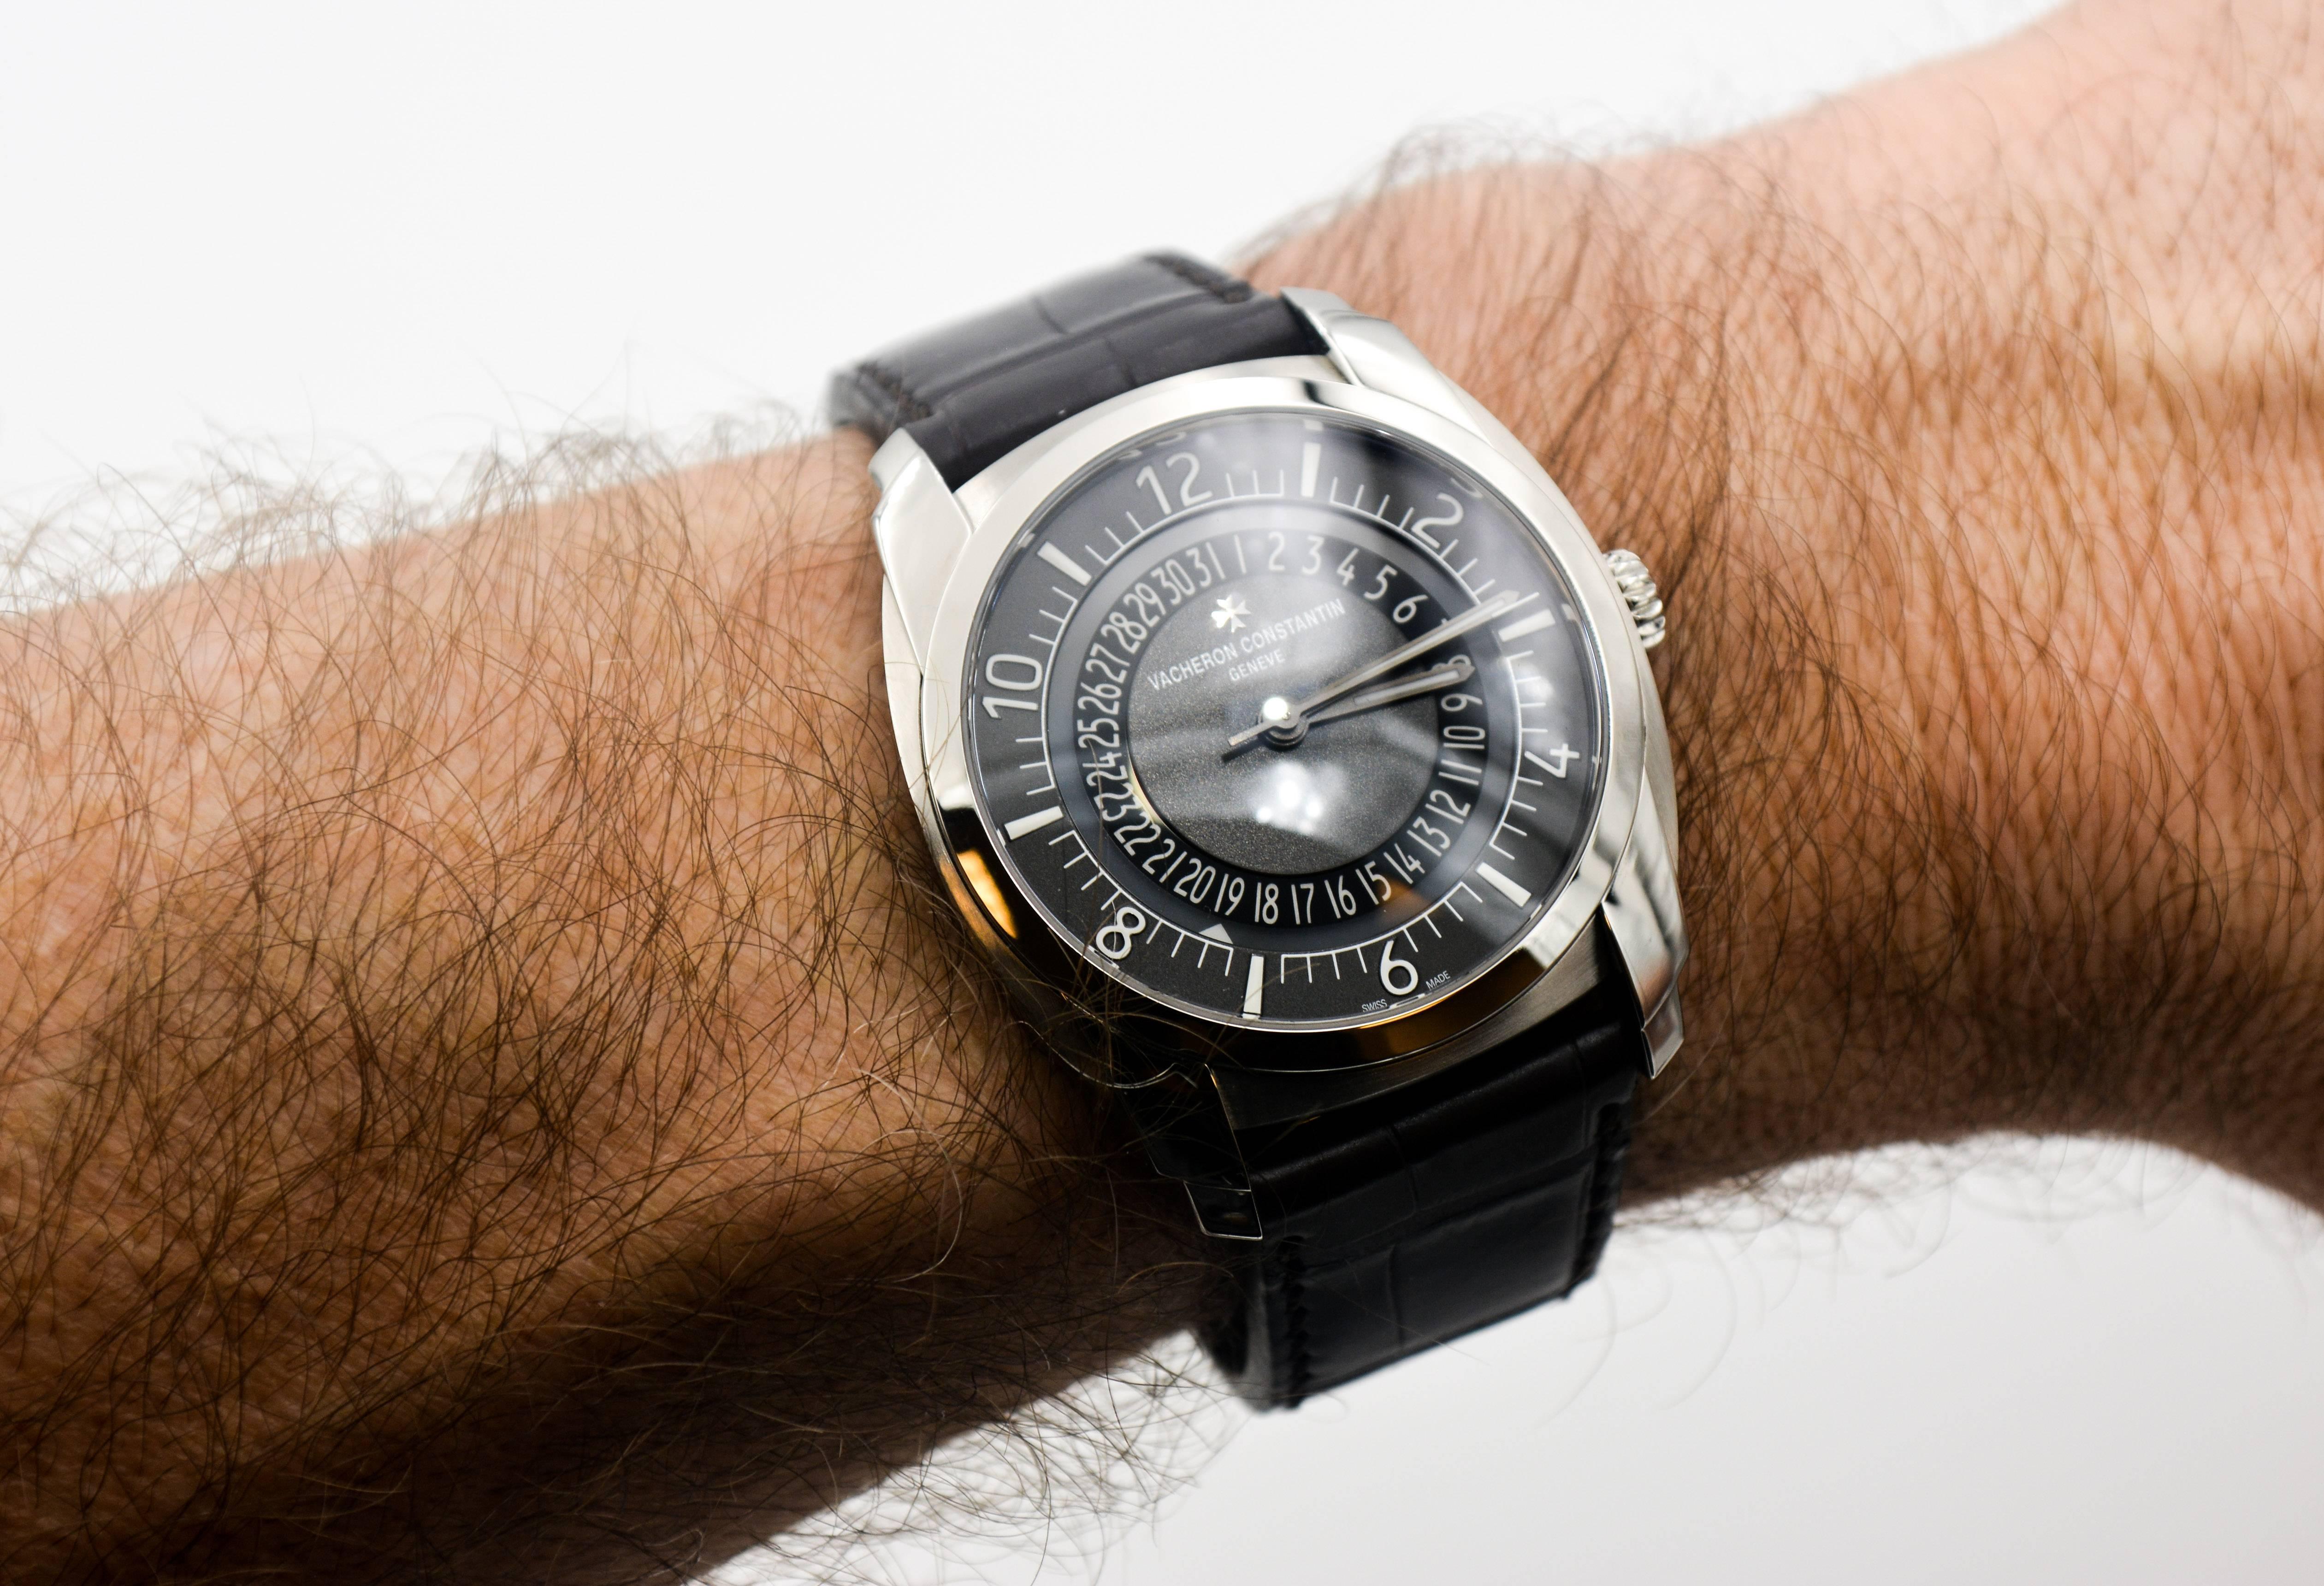 Vacheron Constantin Stainless Steel Quai De L'ile Automatic Wristwatch  1